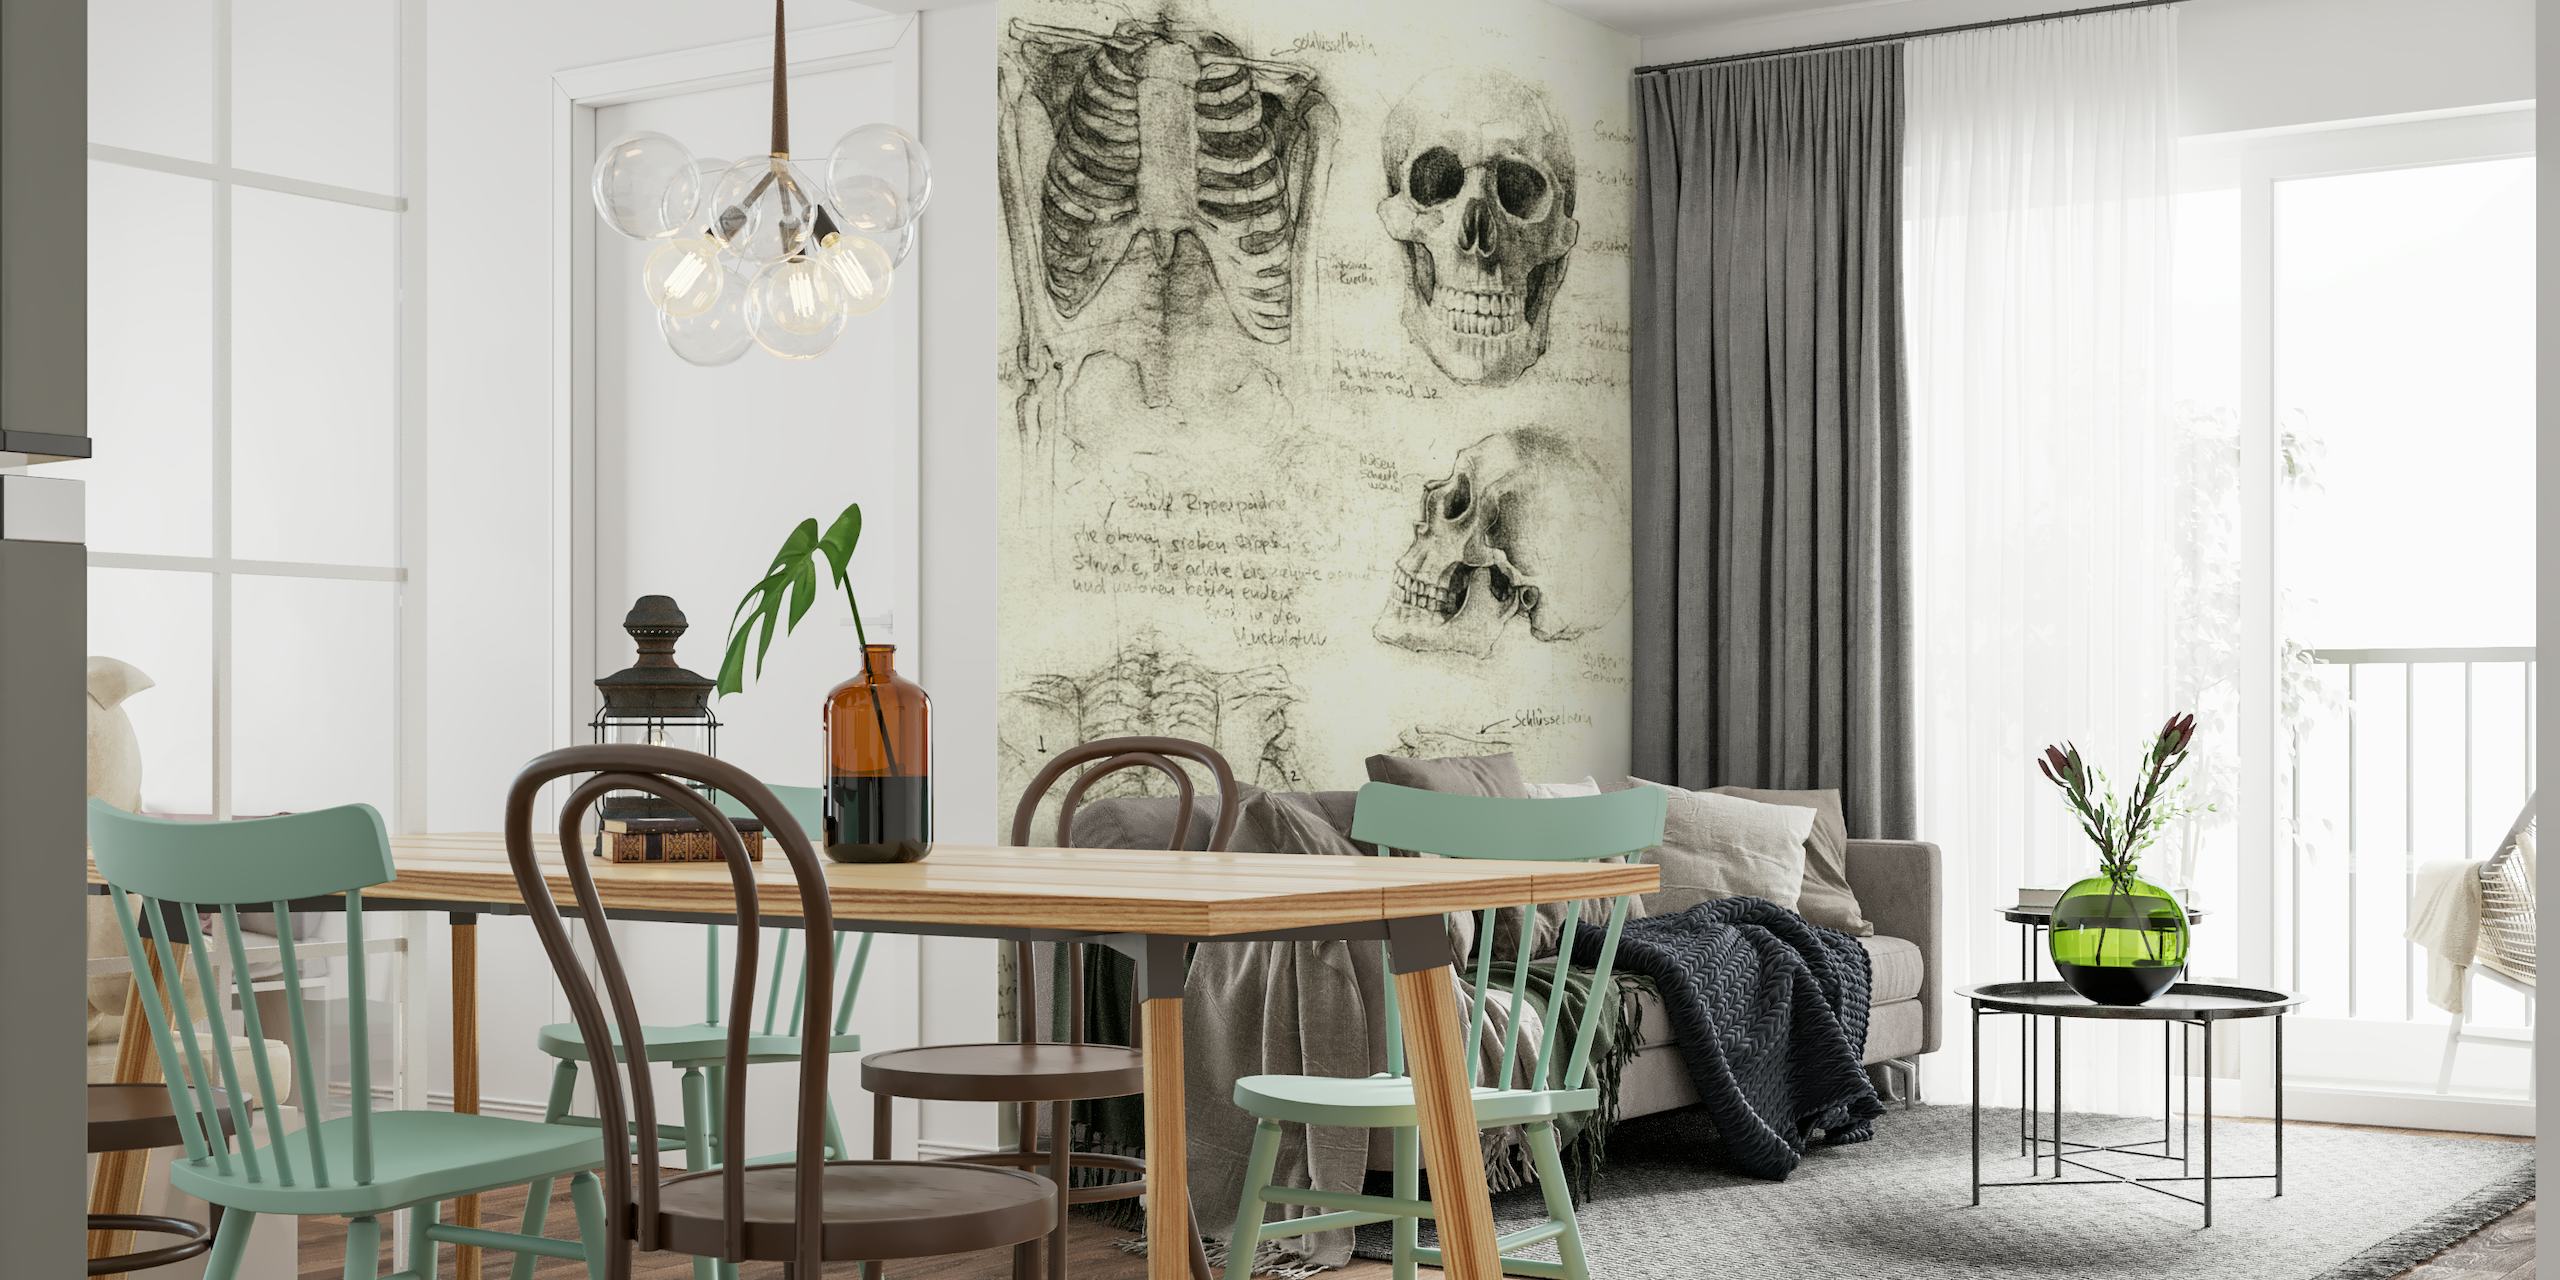 Anatomische skeletschetsen muurschildering met gedetailleerde tekeningen van menselijke schedels en botten